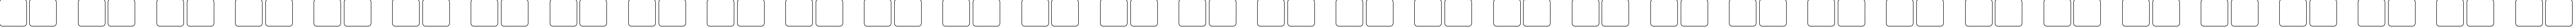 Пример написания русского алфавита шрифтом Chinyen Hollow